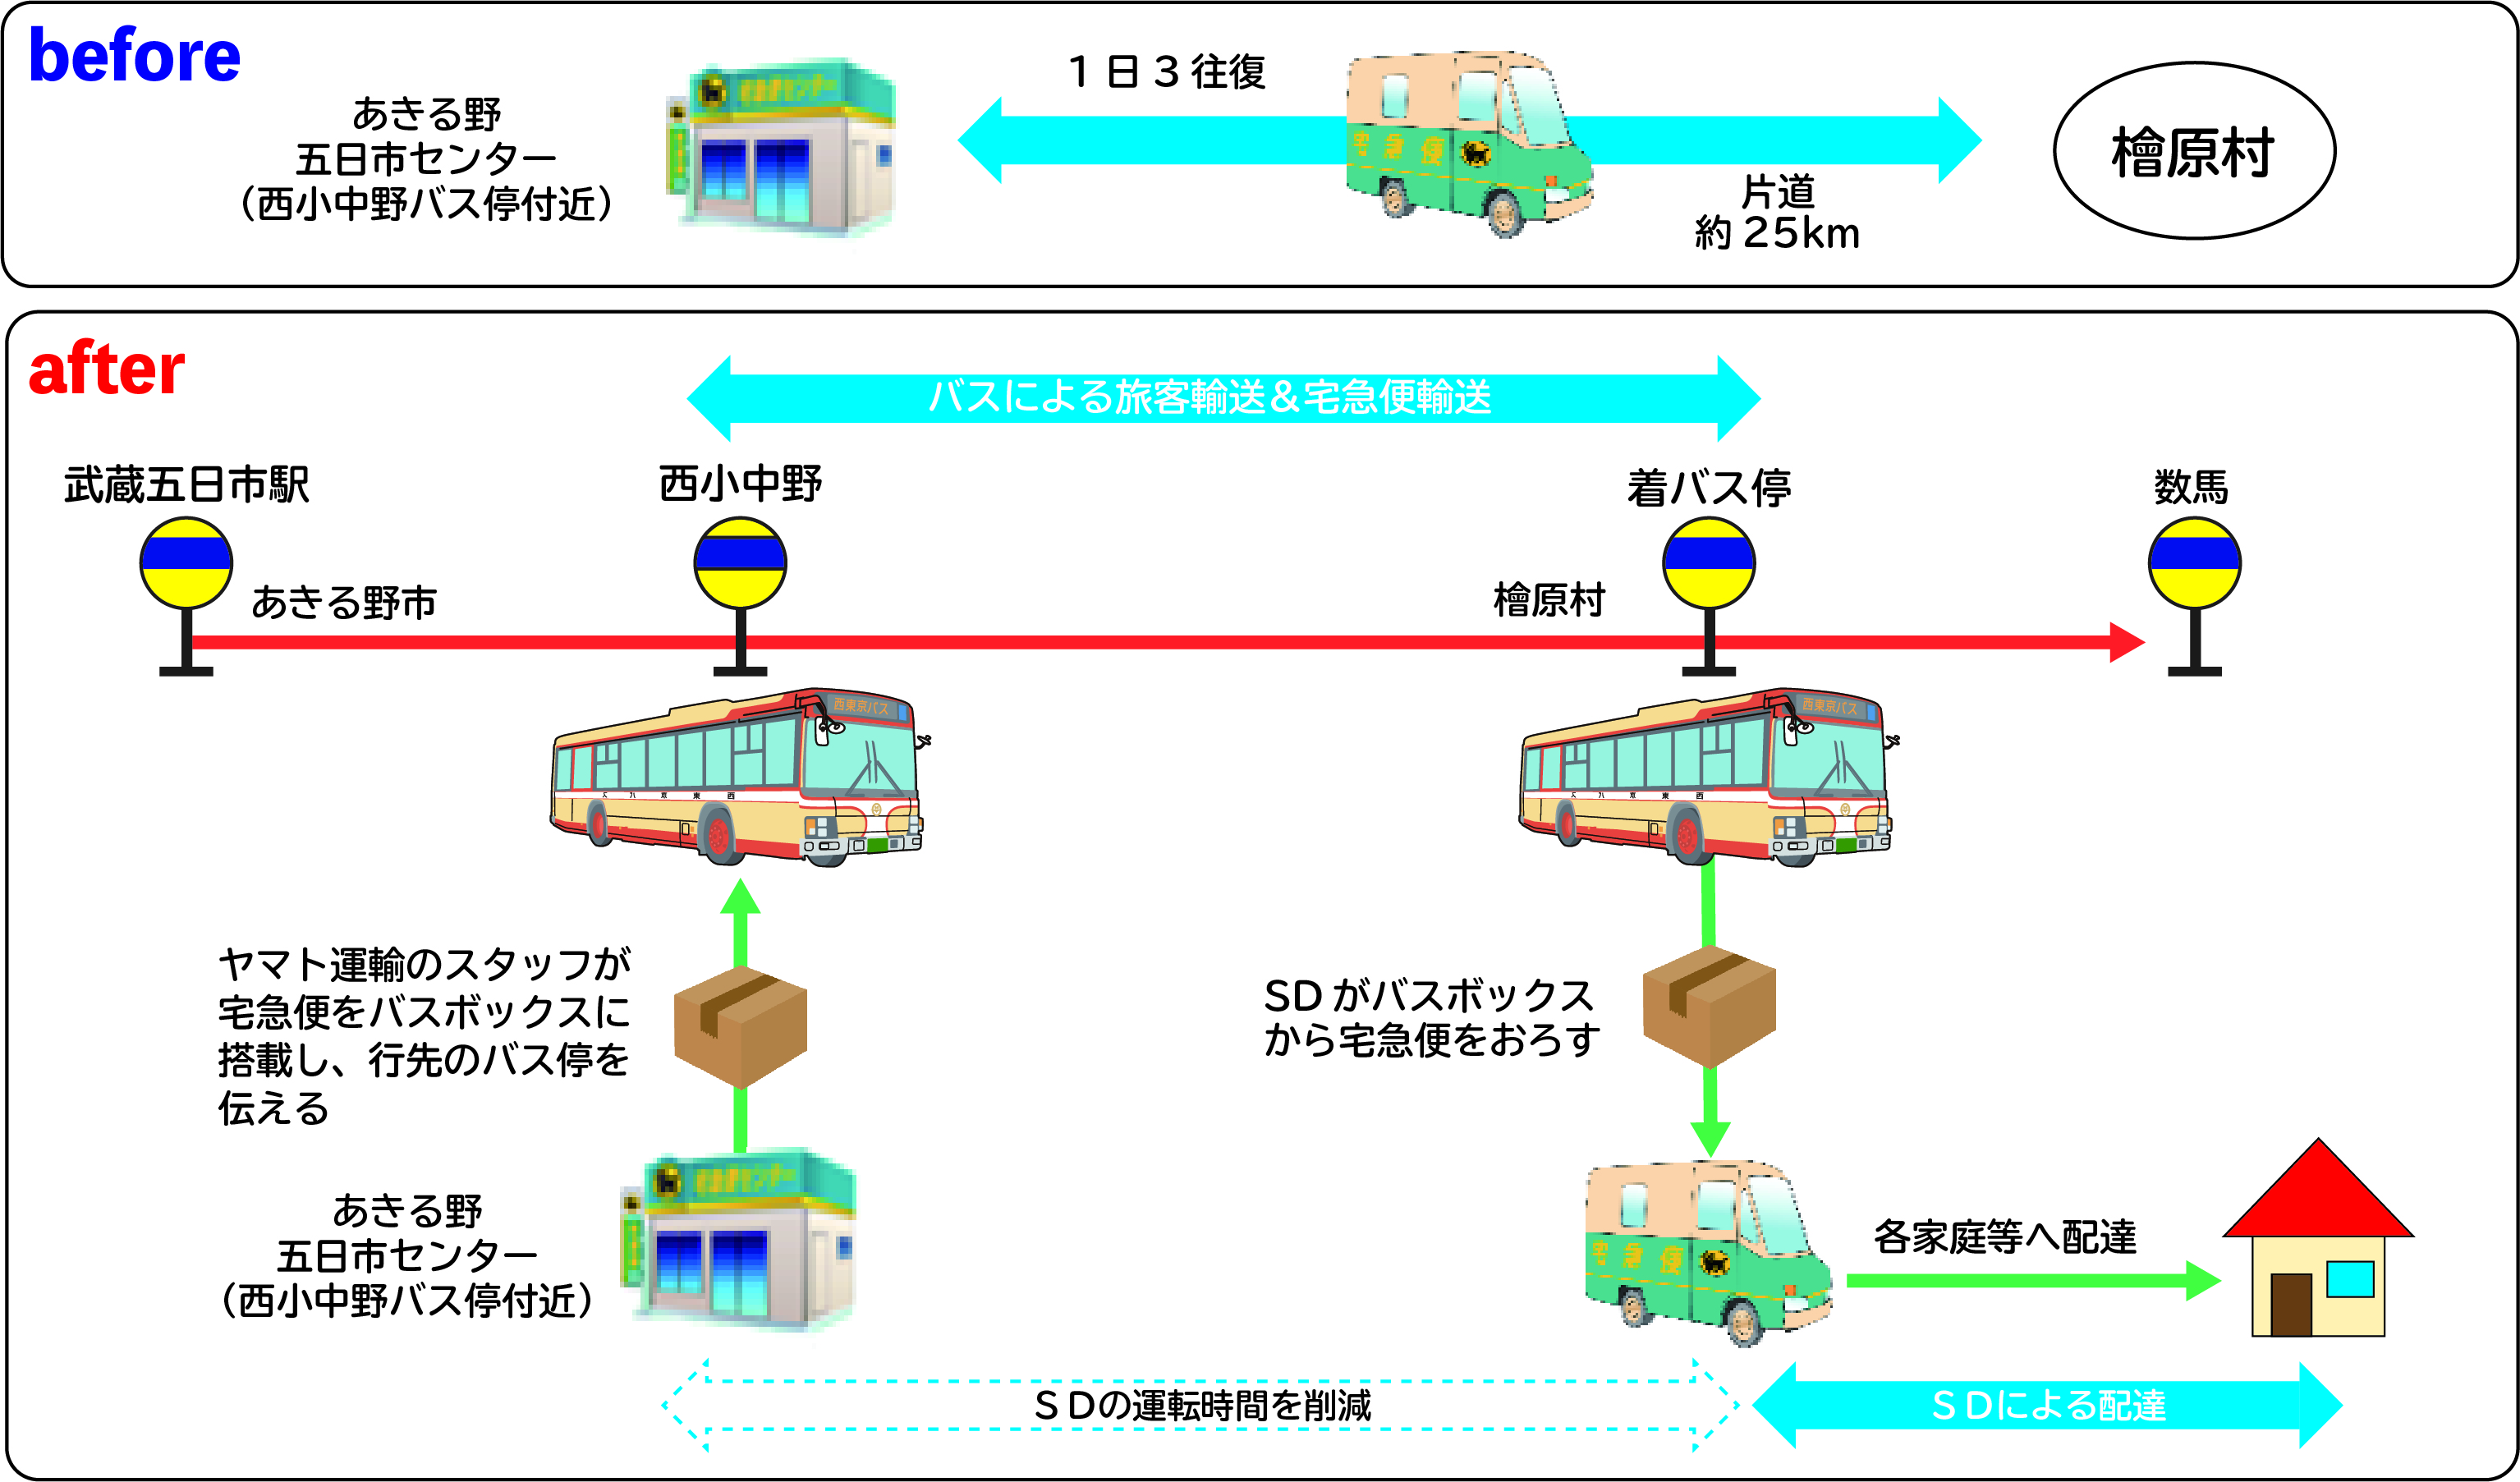 西東京バスとヤマト運輸が連携した 客貨混載 の実証運行を11月1日より開始します 西東京バス株式会社